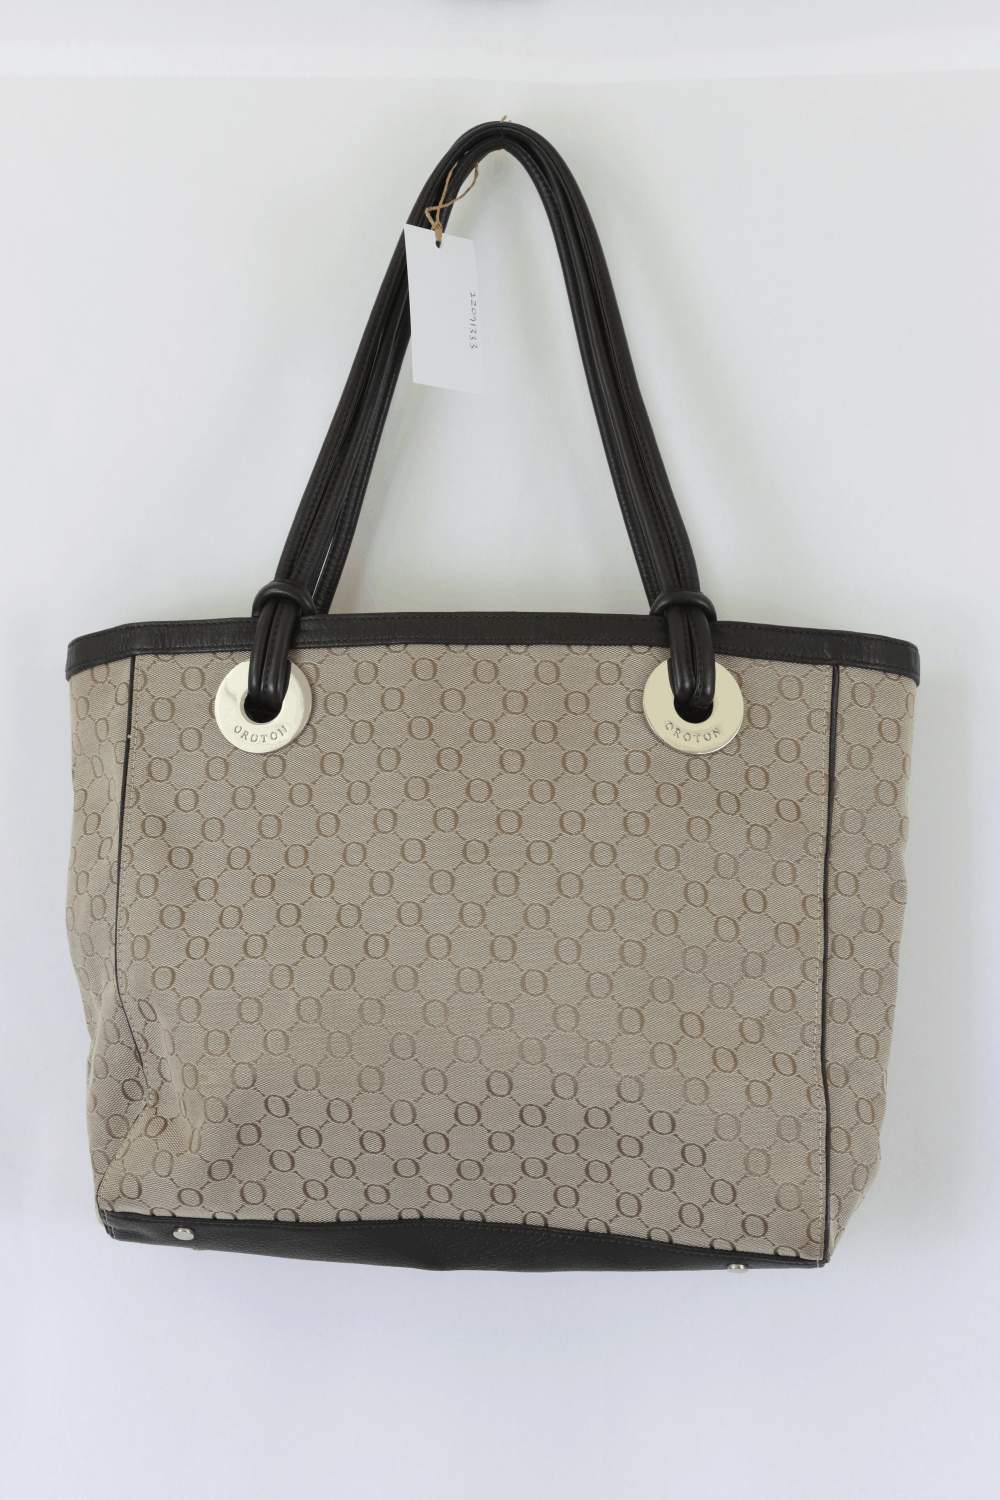 Introducing Oroton Handbags - PurseBlog